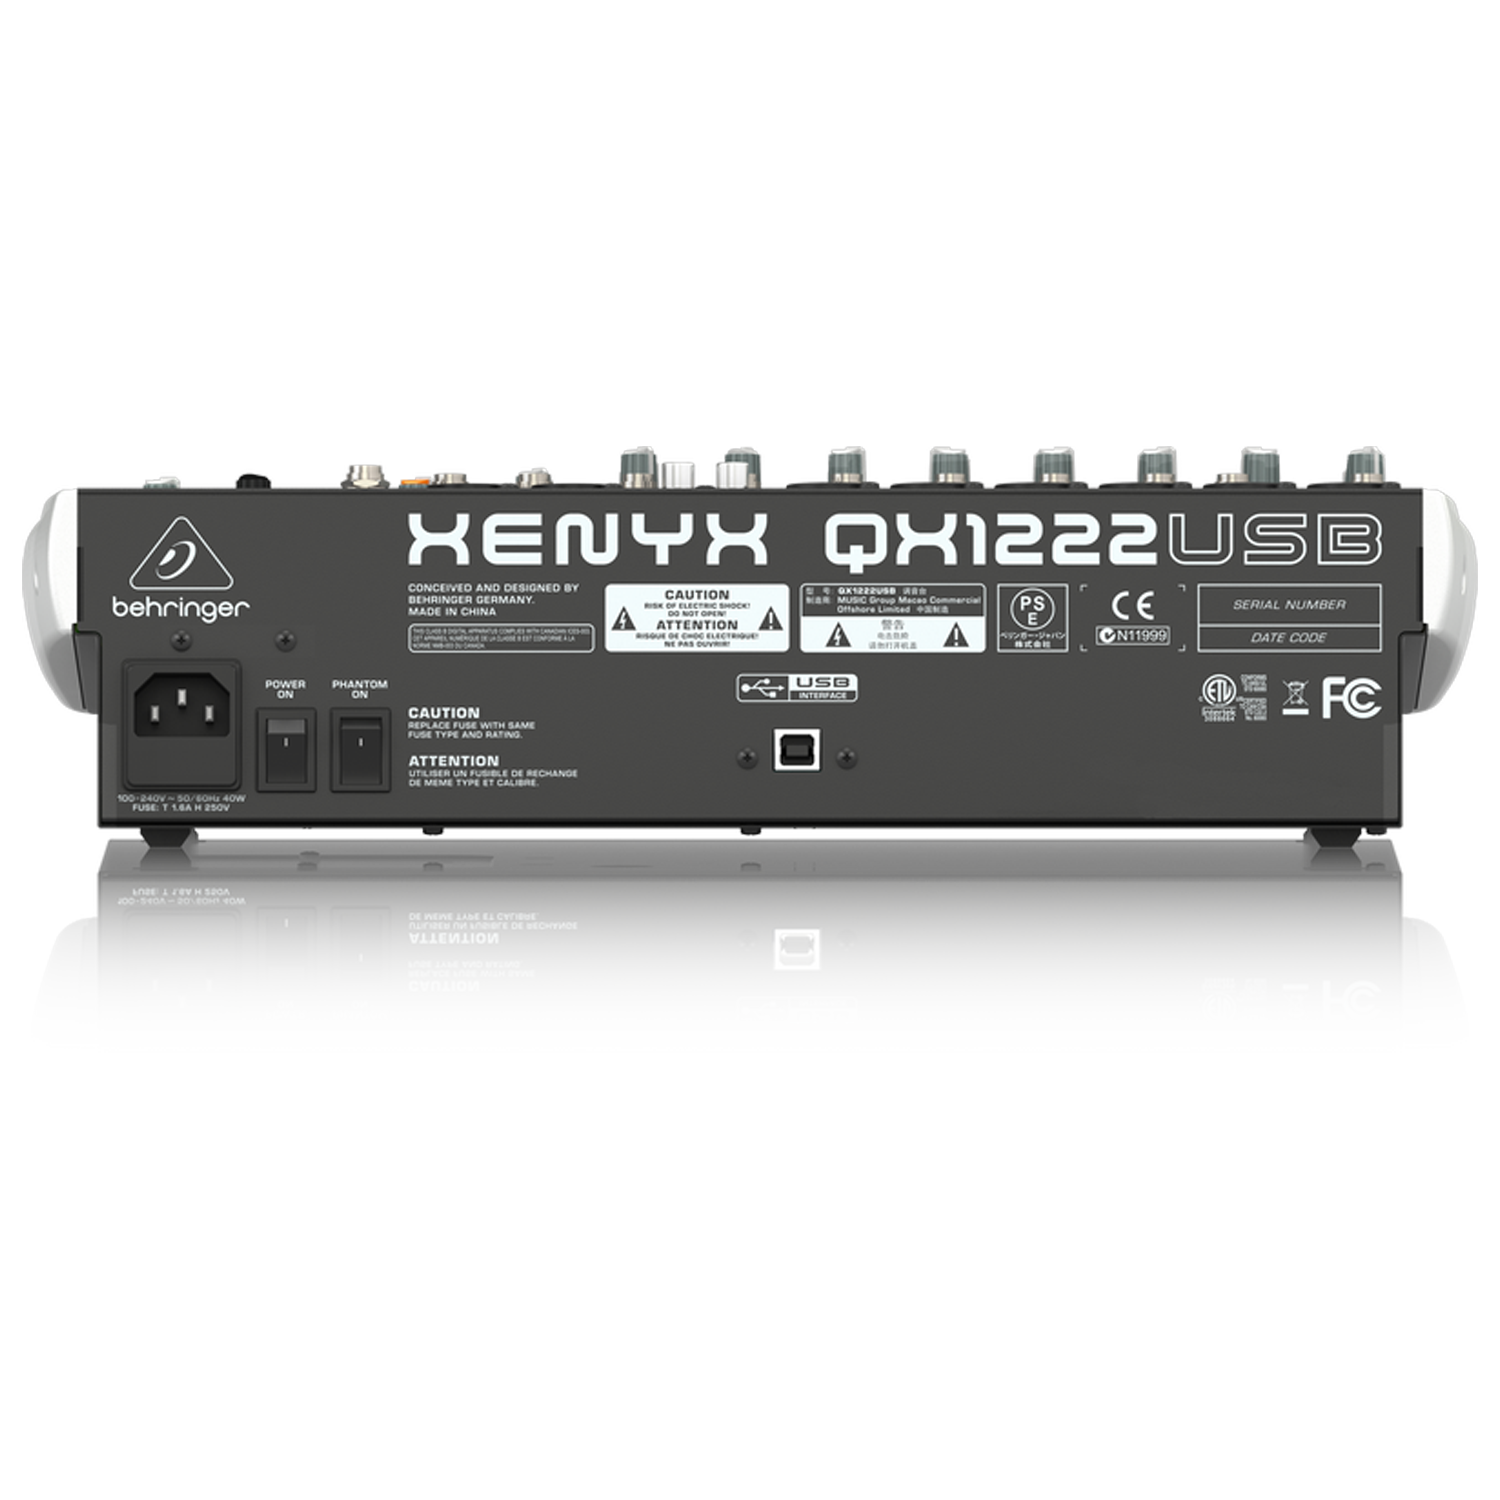 Behringer Xenyx QX1222USB mezclador con USB y efectos